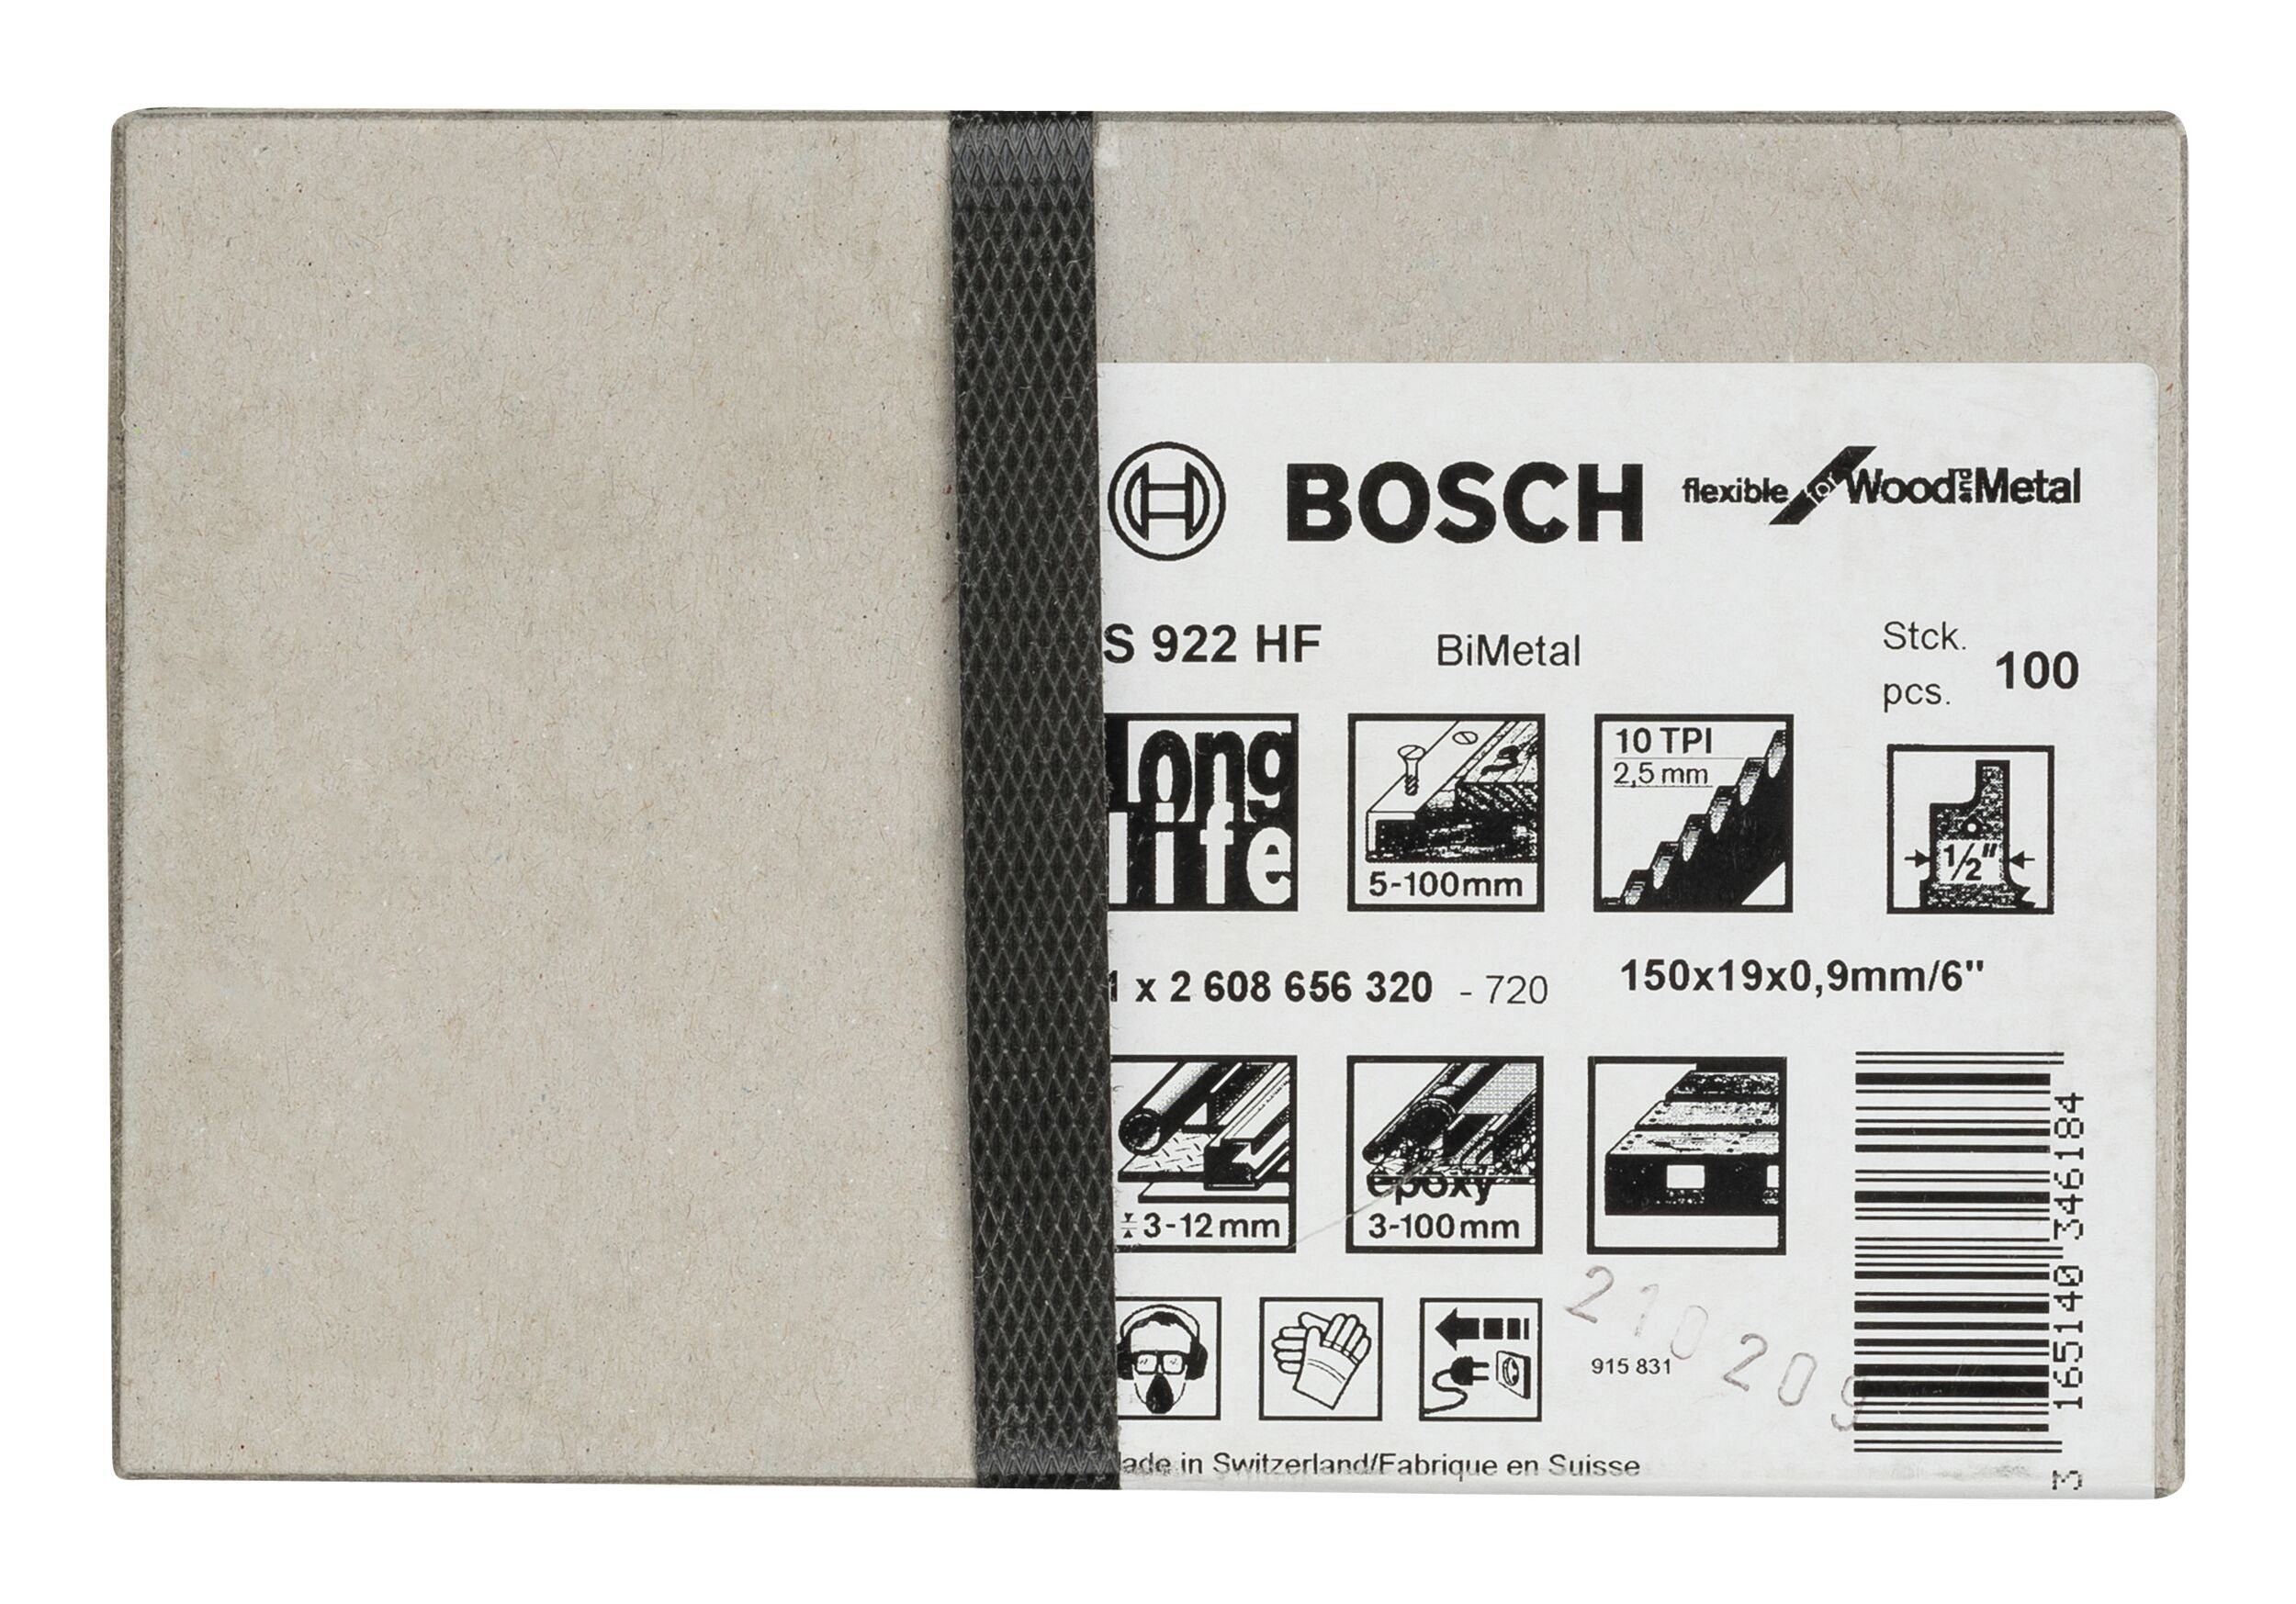 BOSCH Säbelsägeblatt (100 922 100er-Pack HF Stück), - Wood and Metal for Flexible S